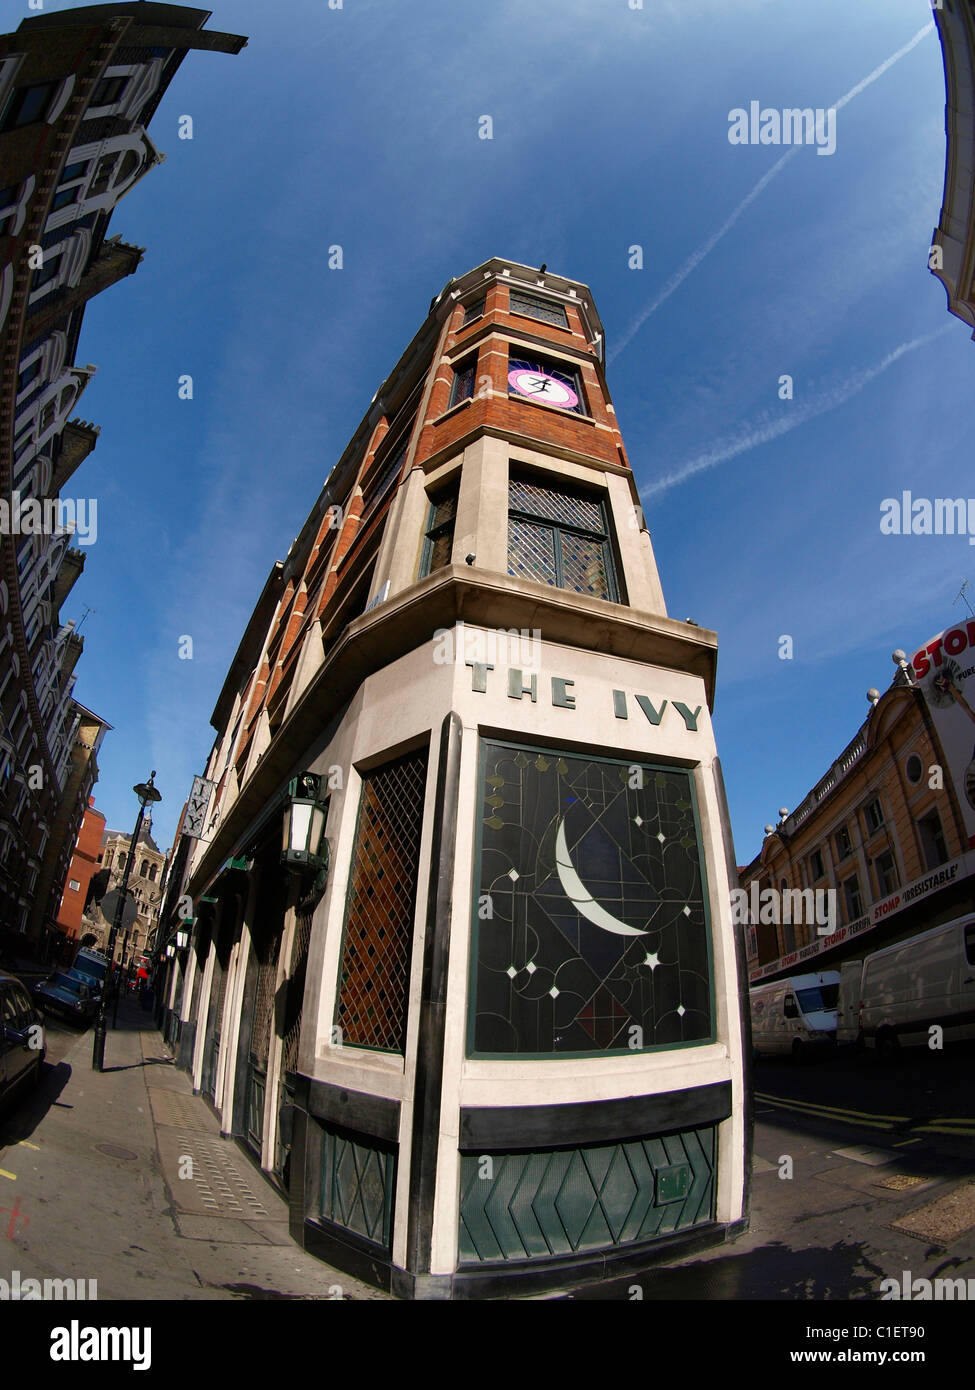 El restaurante Ivy 1 West Street WC2 Londres Inglaterra Foto de stock